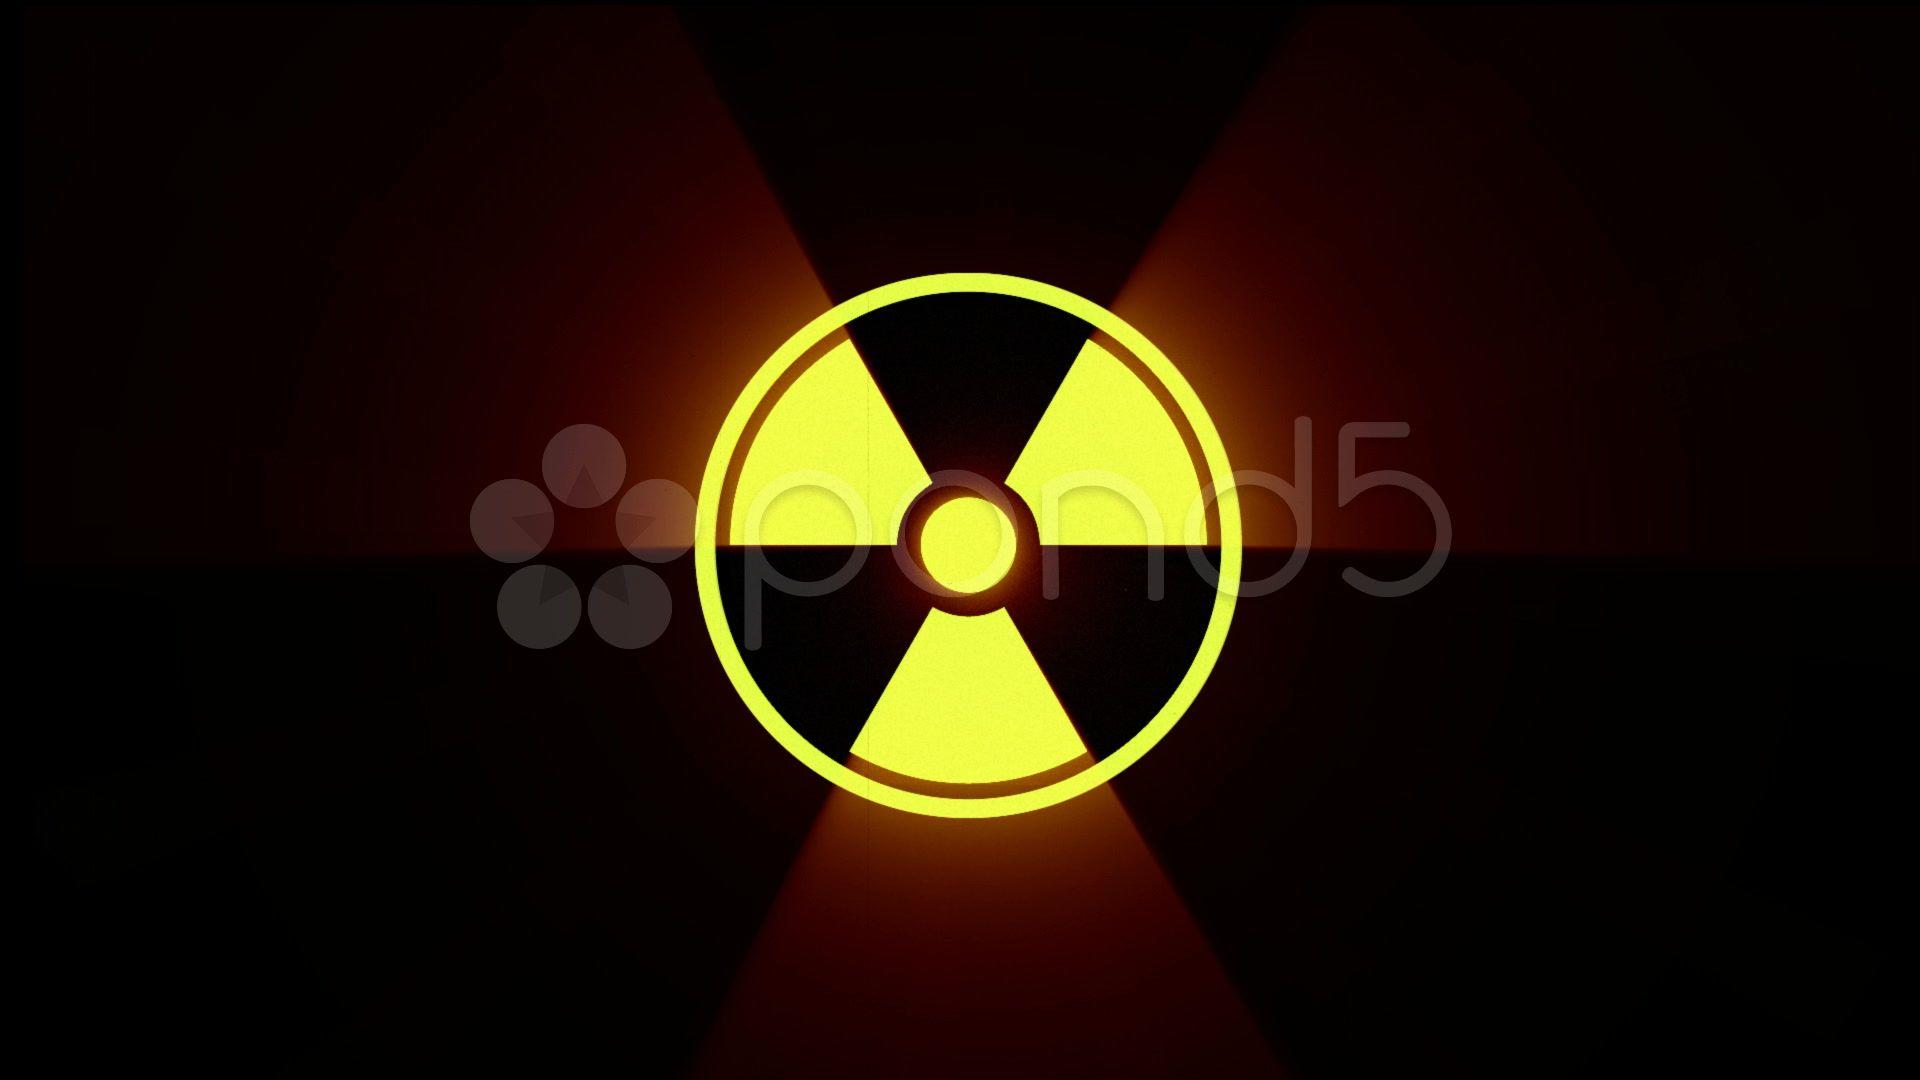 Video: Attention, radiation sign / hazard symbol